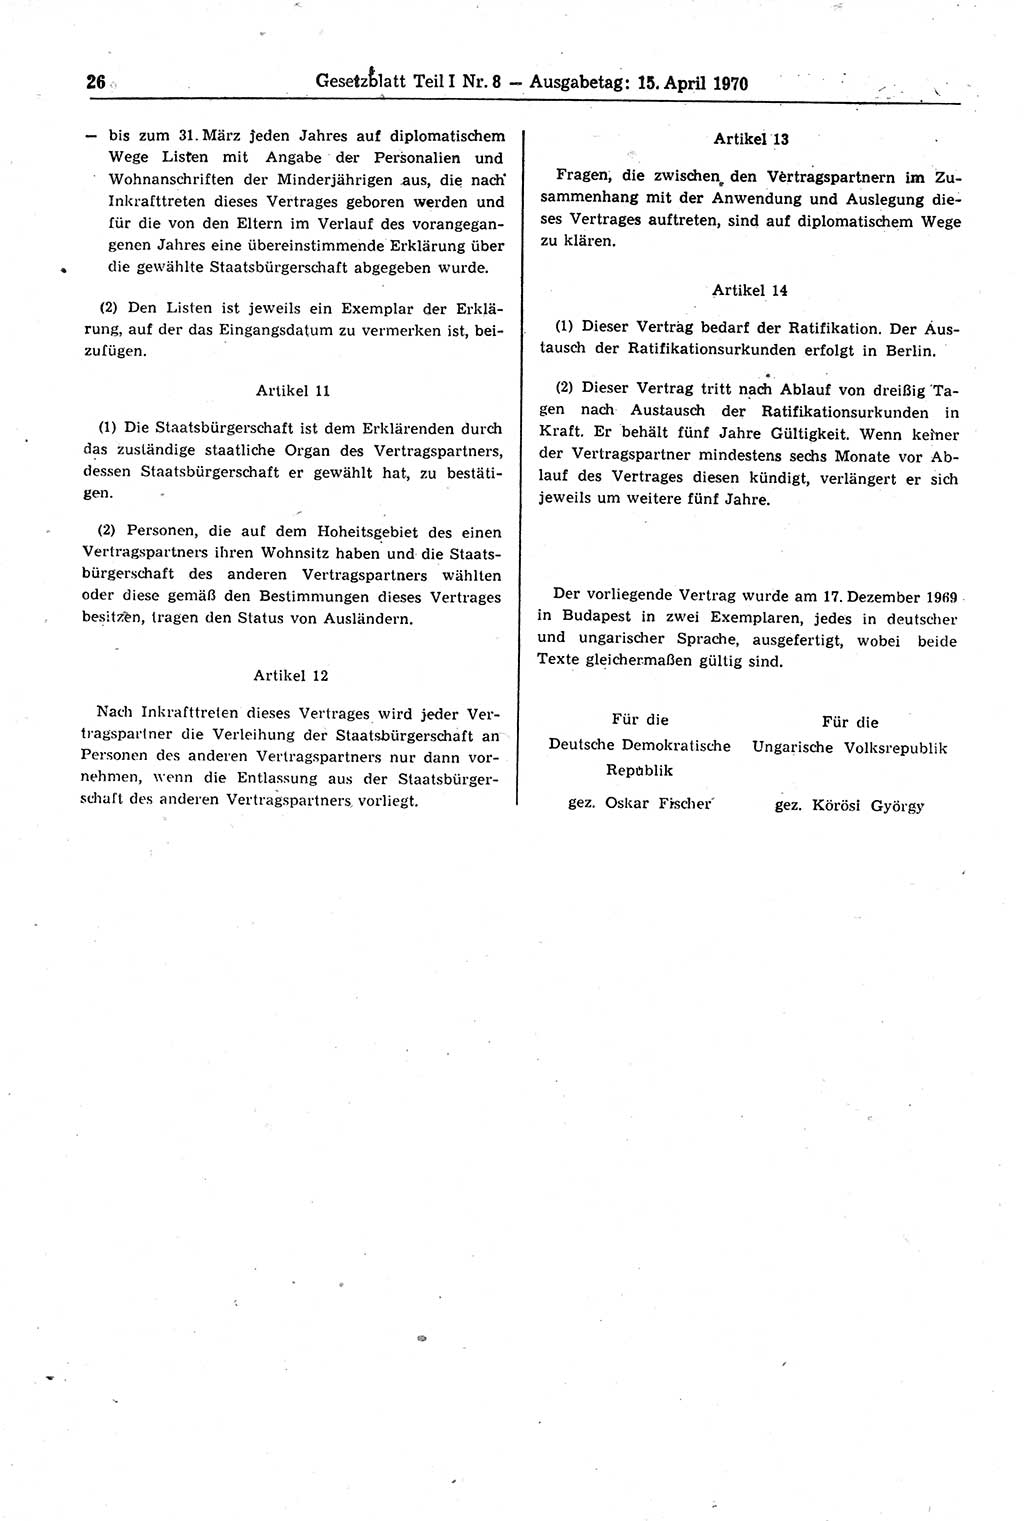 Gesetzblatt (GBl.) der Deutschen Demokratischen Republik (DDR) Teil Ⅰ 1970, Seite 26 (GBl. DDR Ⅰ 1970, S. 26)